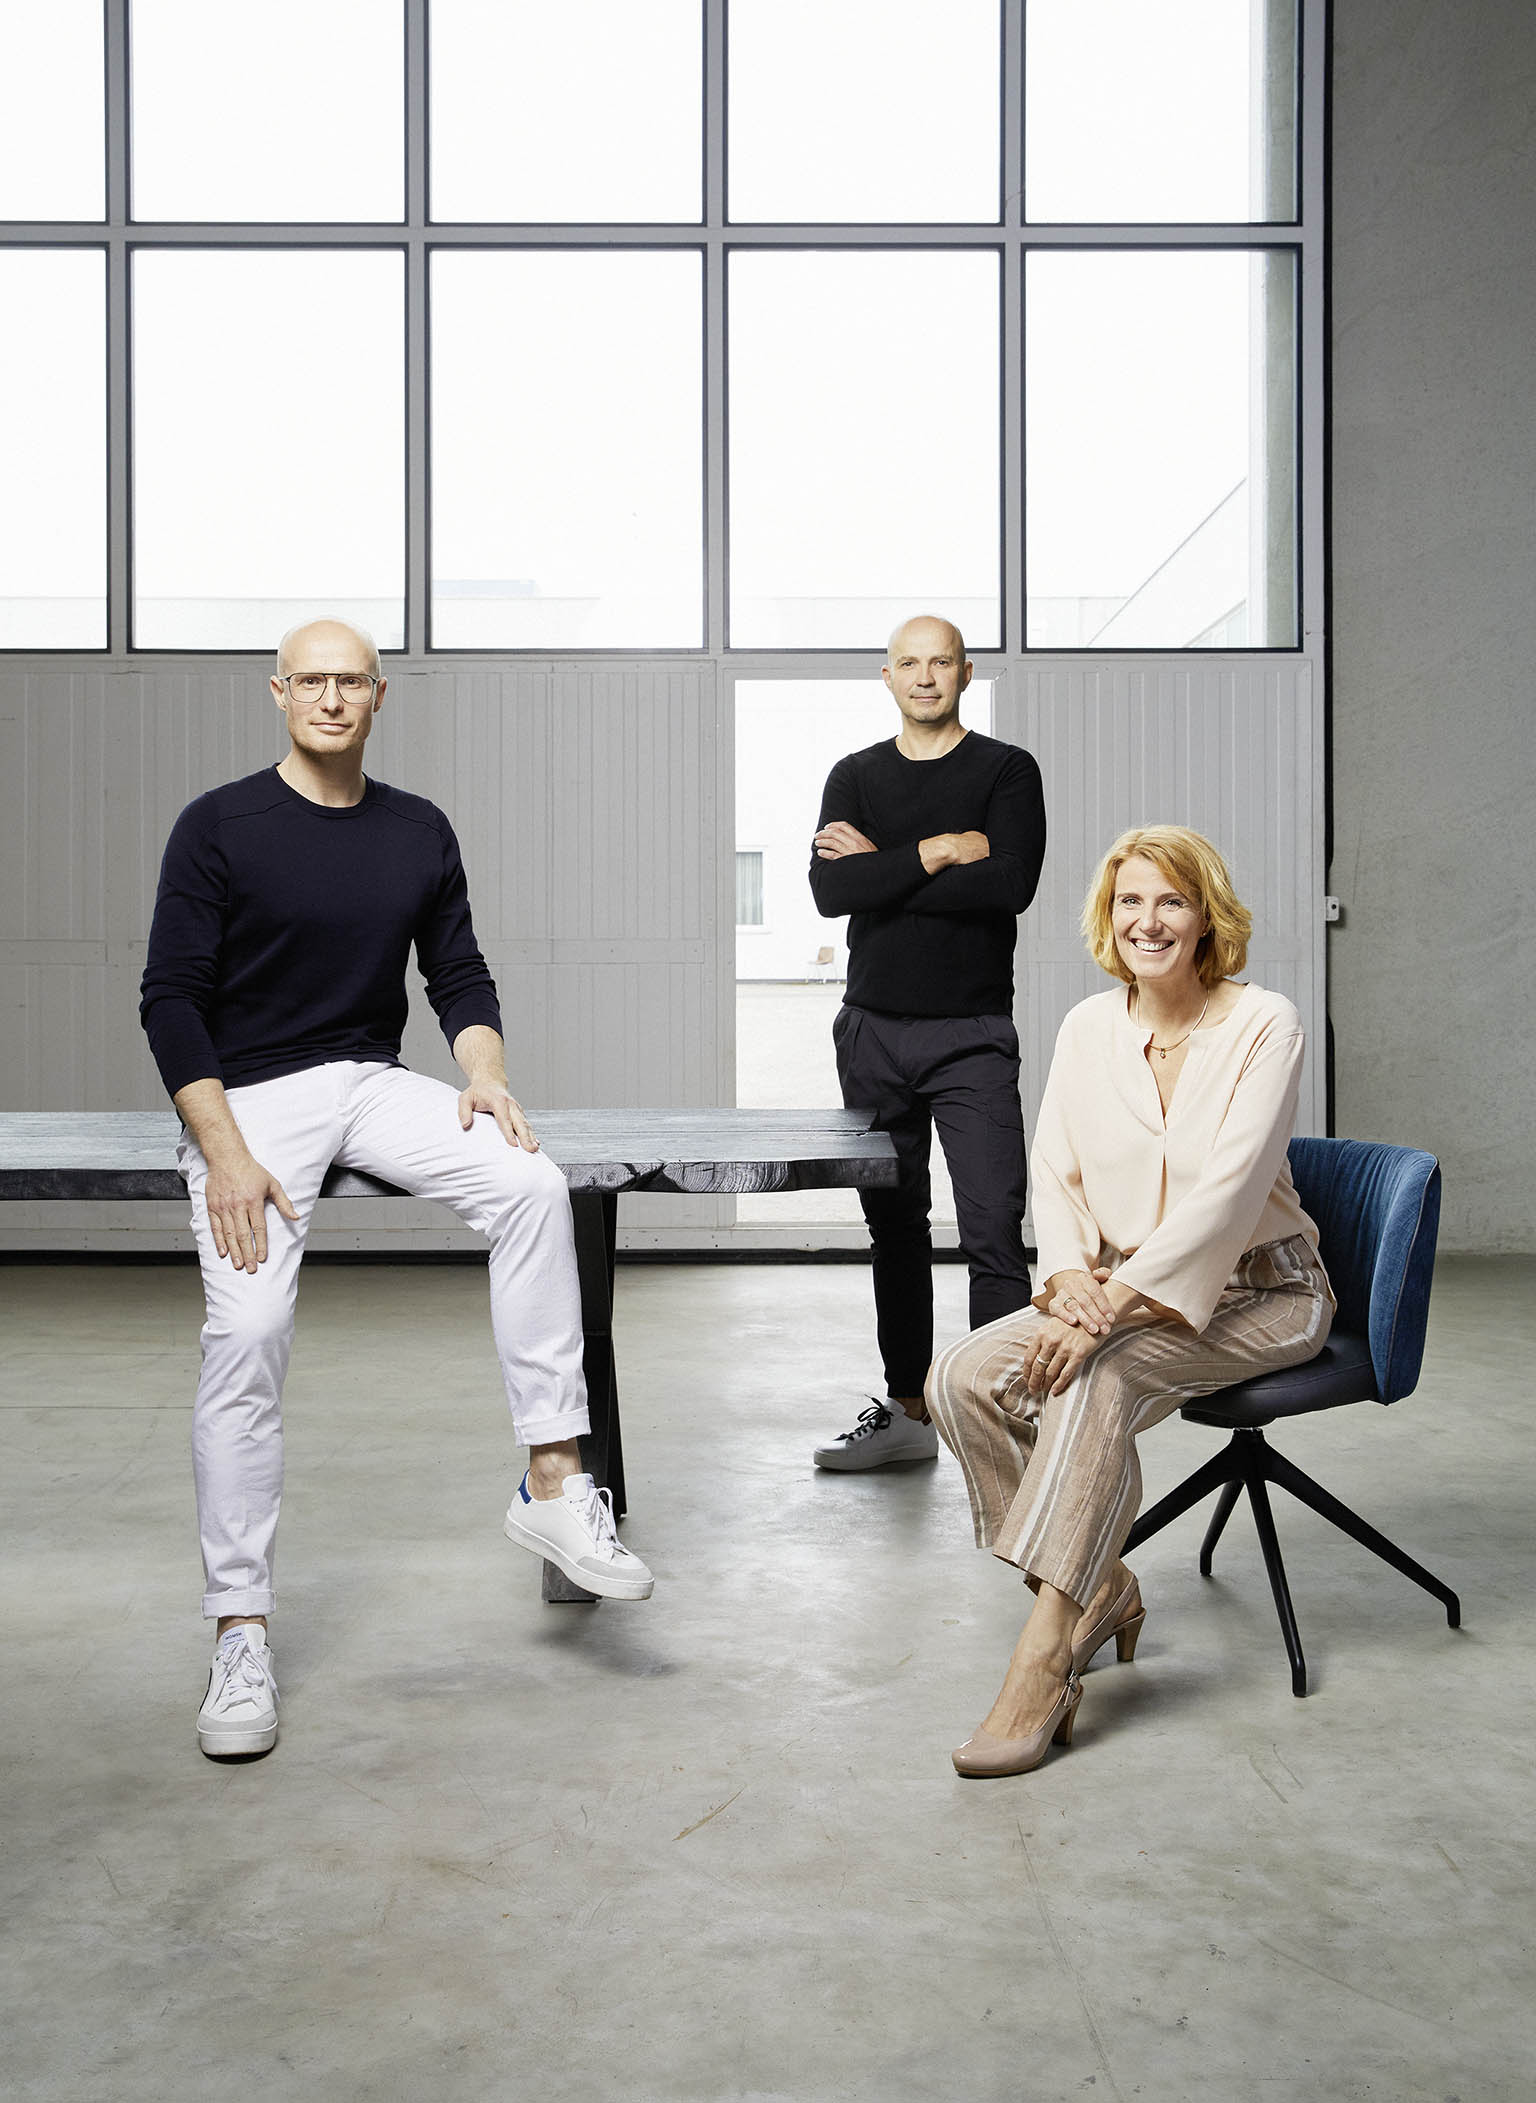 Schon in der dritten Generation arbeitet die Familie zusammen – auch wir drei Geschwister Theo, Bettina und Stefan Haas teilen die Leidenschaft das Unternehmen weiter zu entwickeln. 